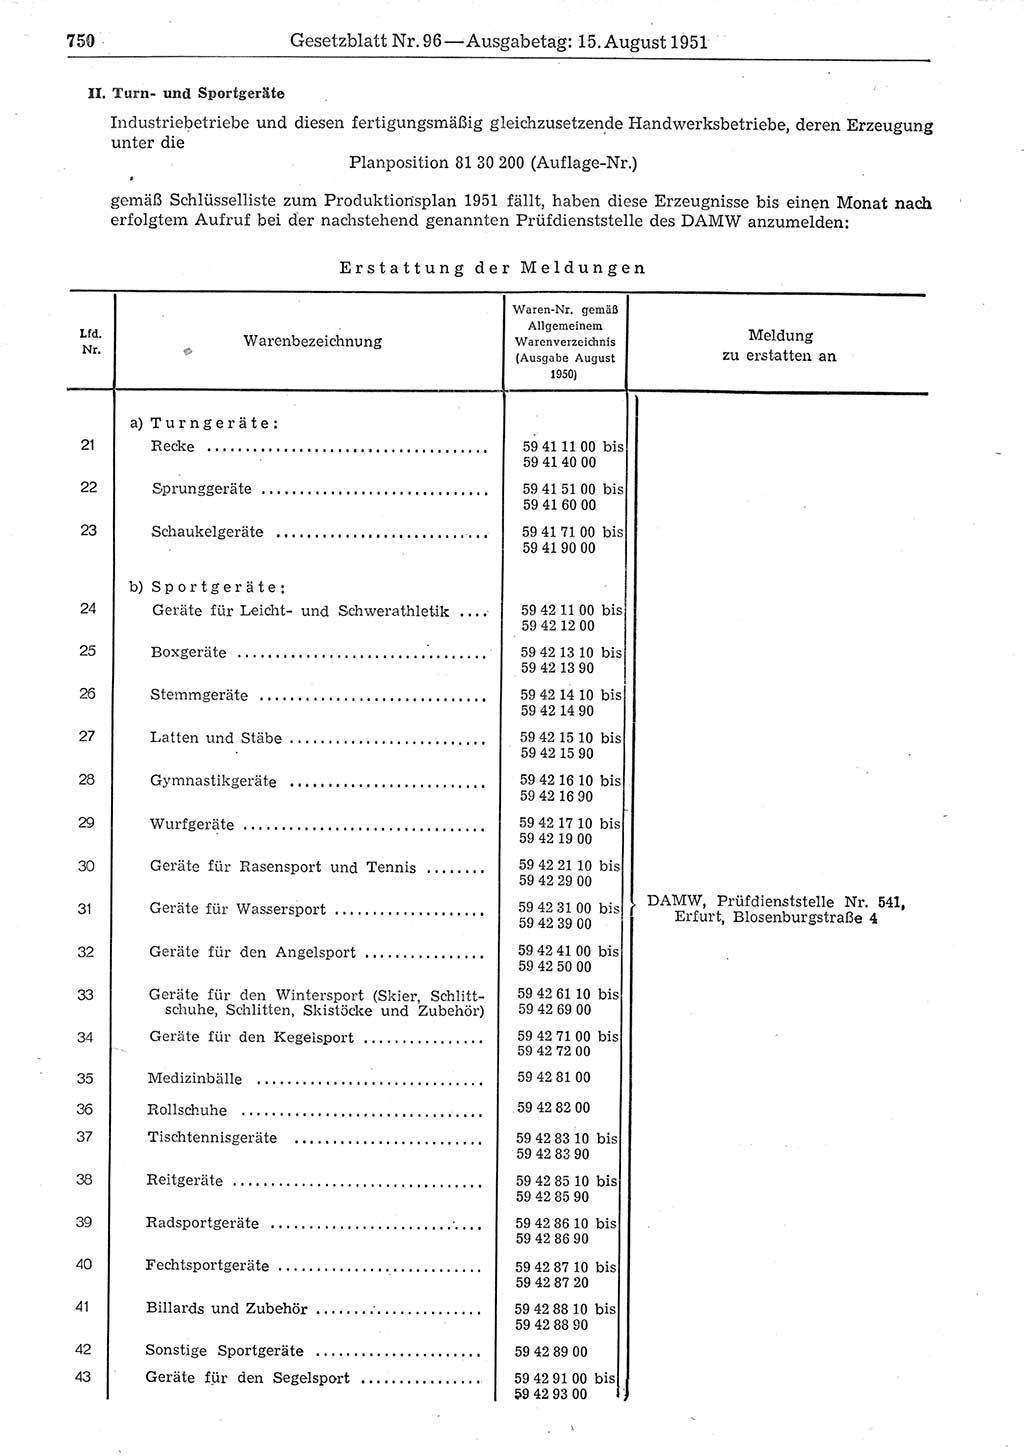 Gesetzblatt (GBl.) der Deutschen Demokratischen Republik (DDR) 1951, Seite 750 (GBl. DDR 1951, S. 750)